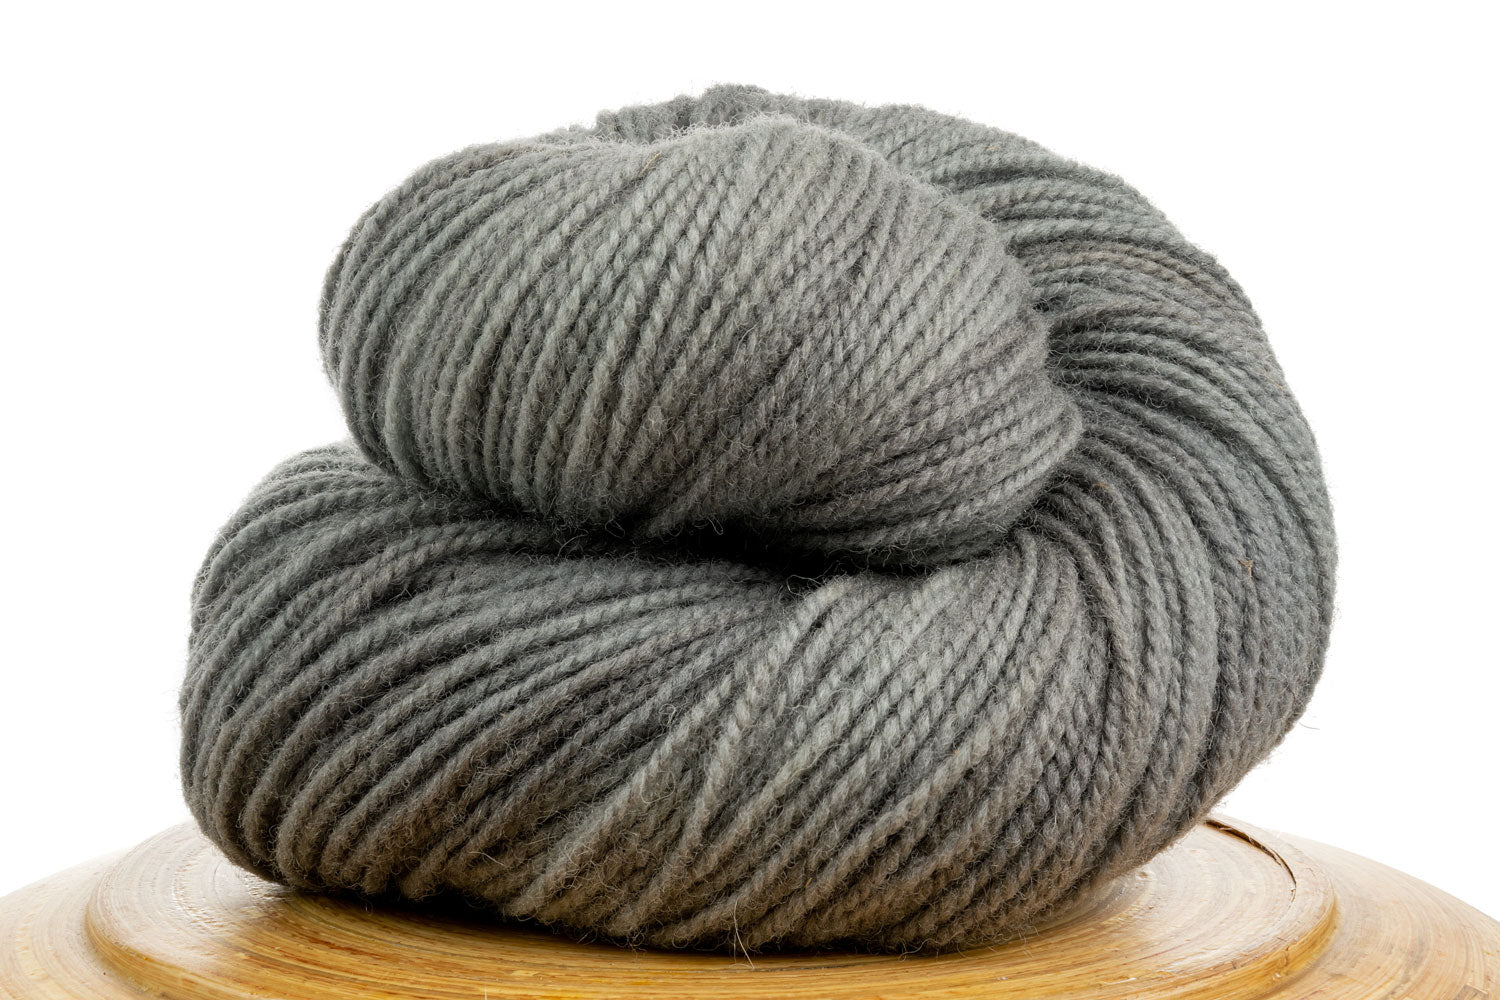 Winfield Canadian hand-dyed yarn in Fog, a medium cool grey